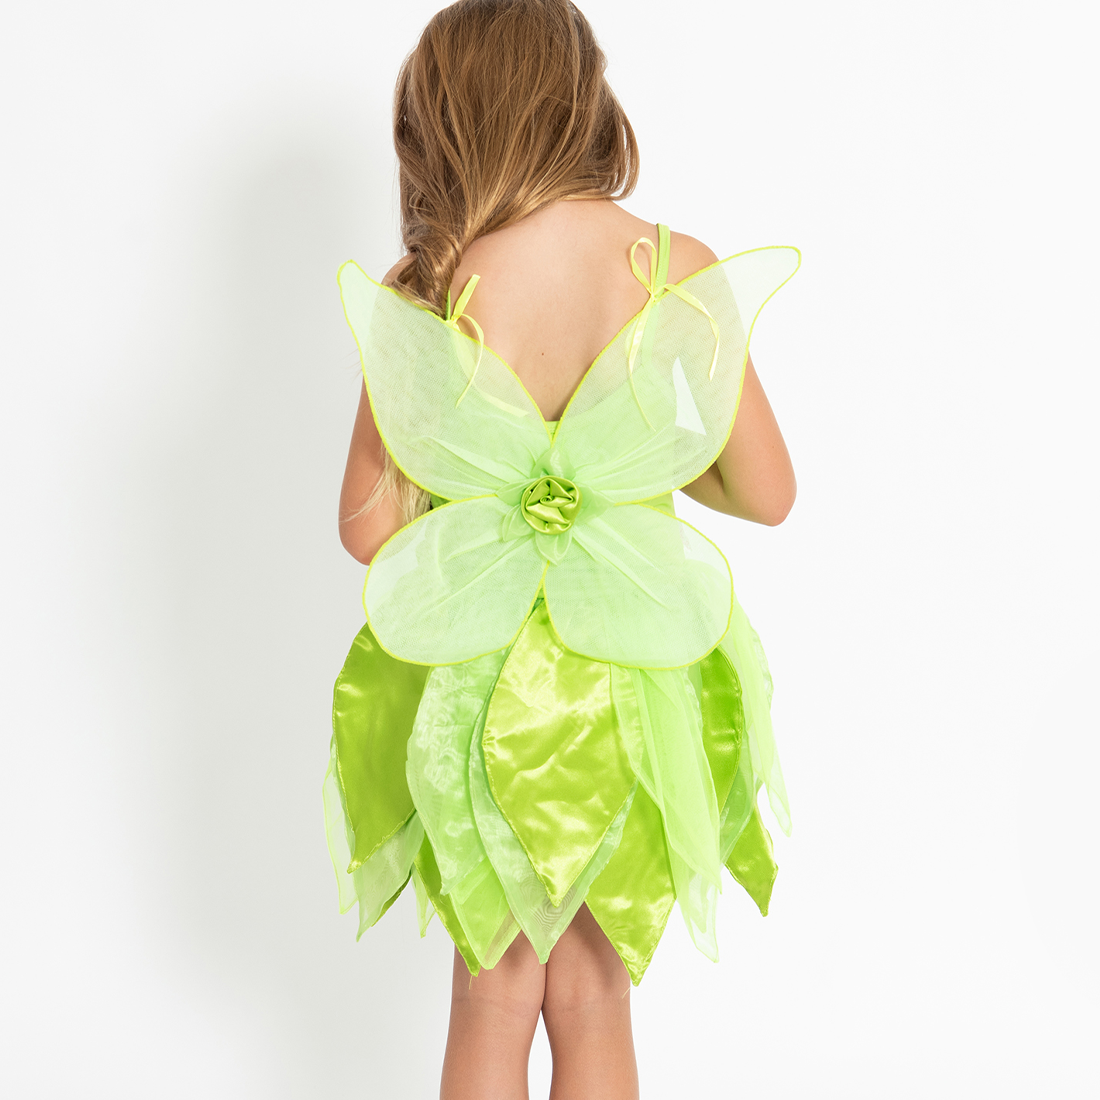 Tinker Bell Fairy Dress